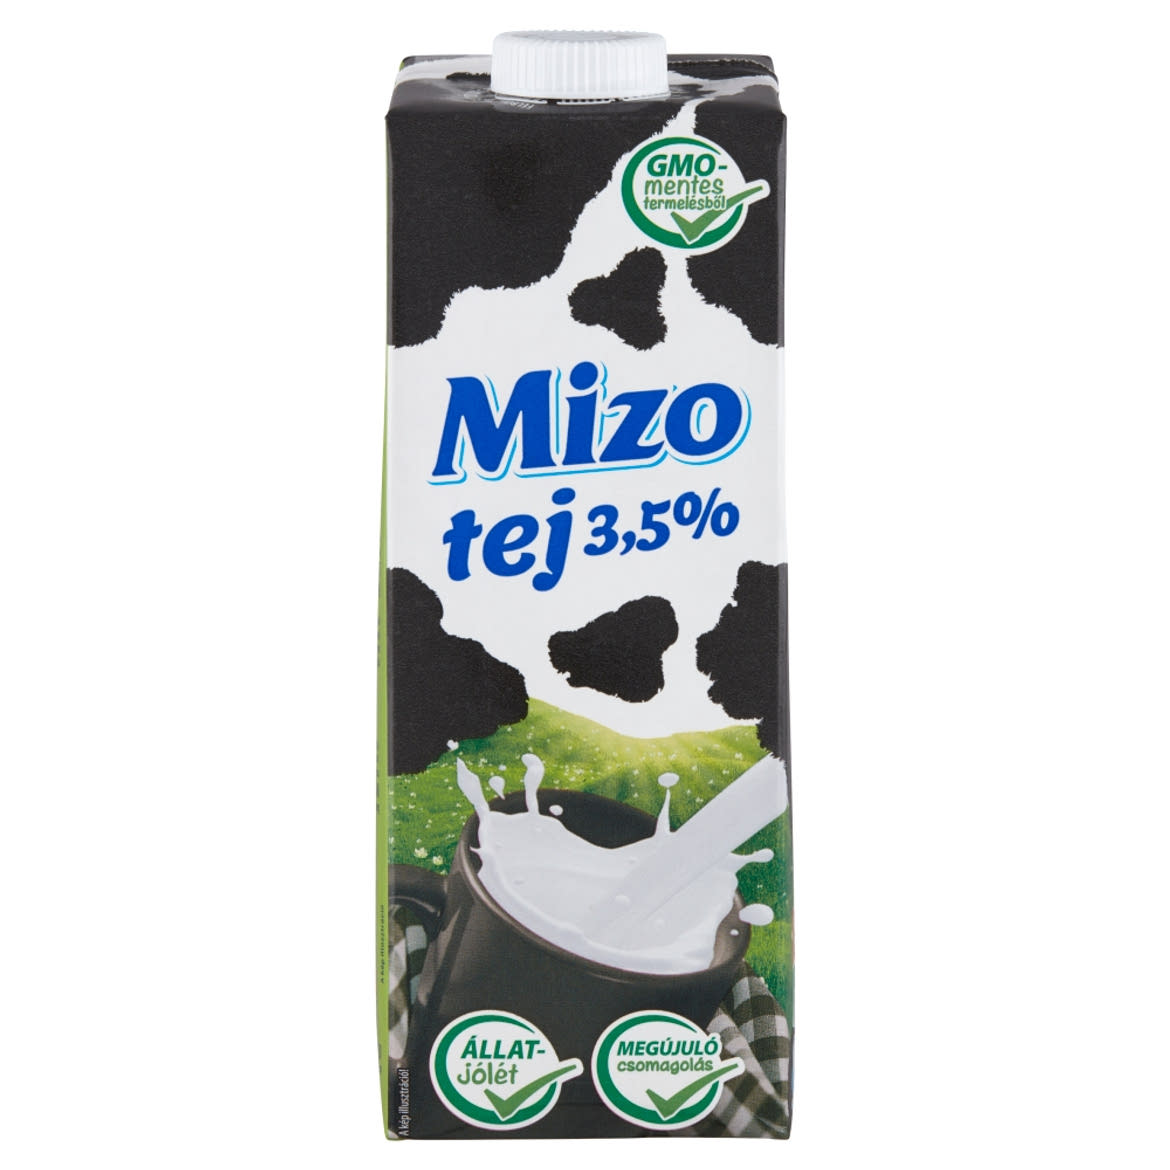 Mizo UHT teljes tej 3,5%